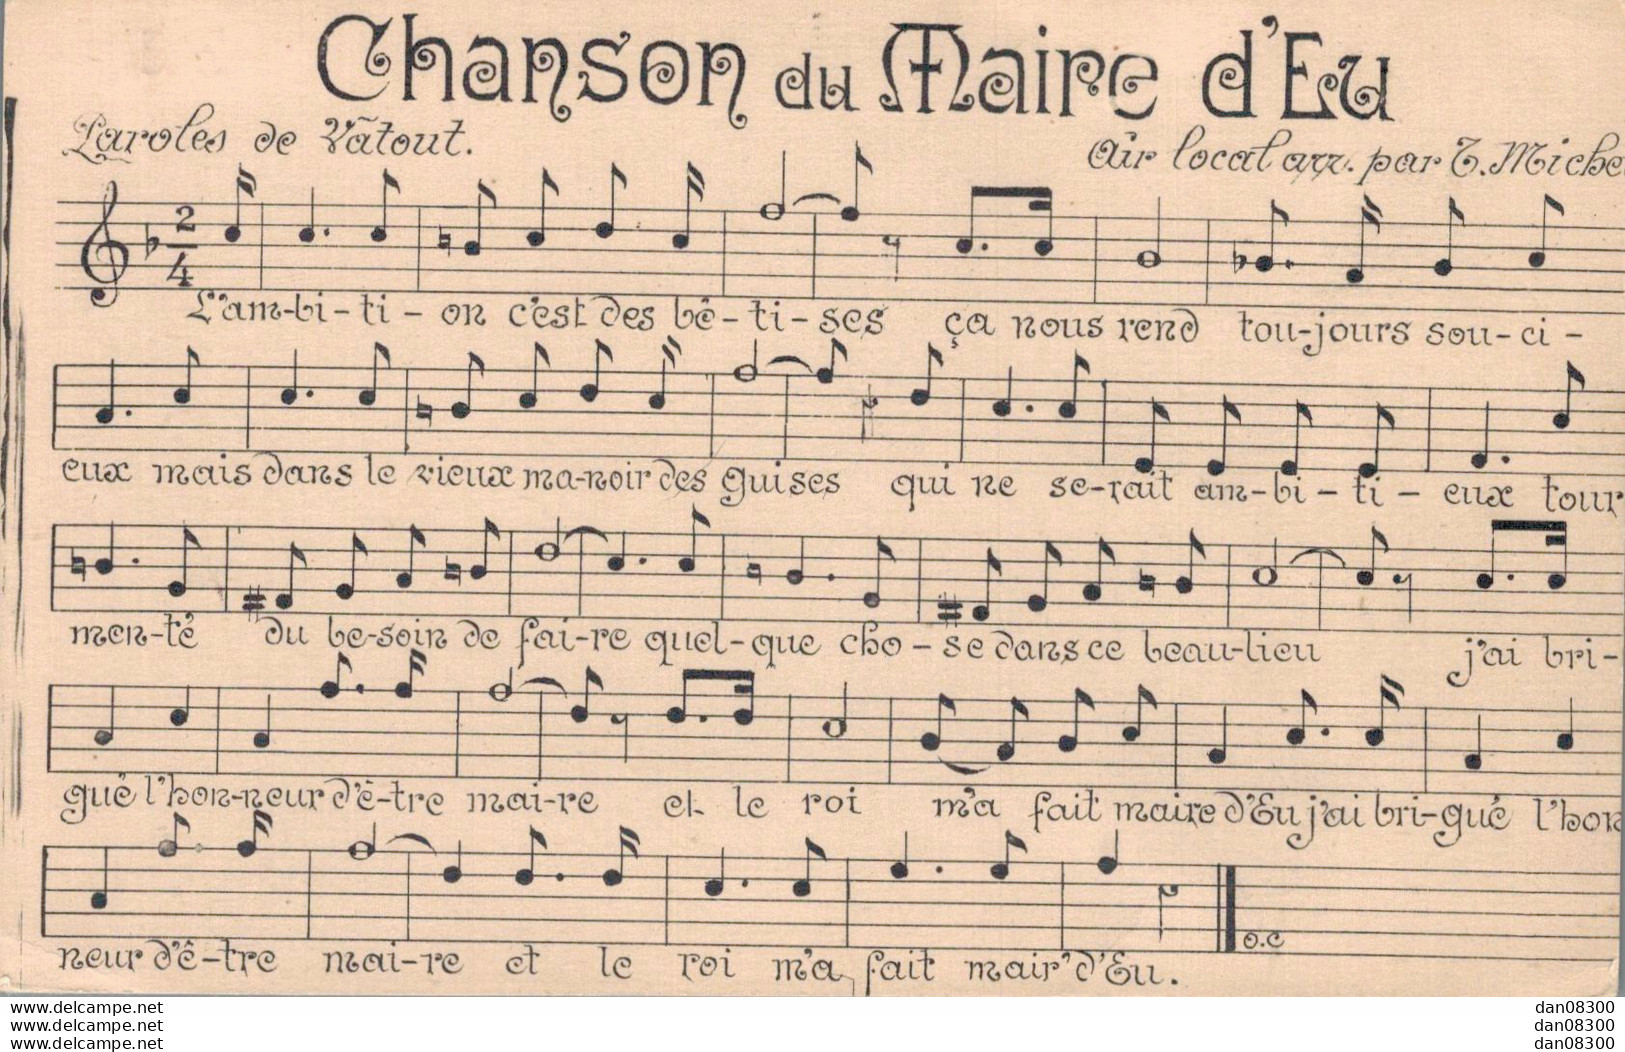 76 CHANSON DU MAIRE D'EU - Música